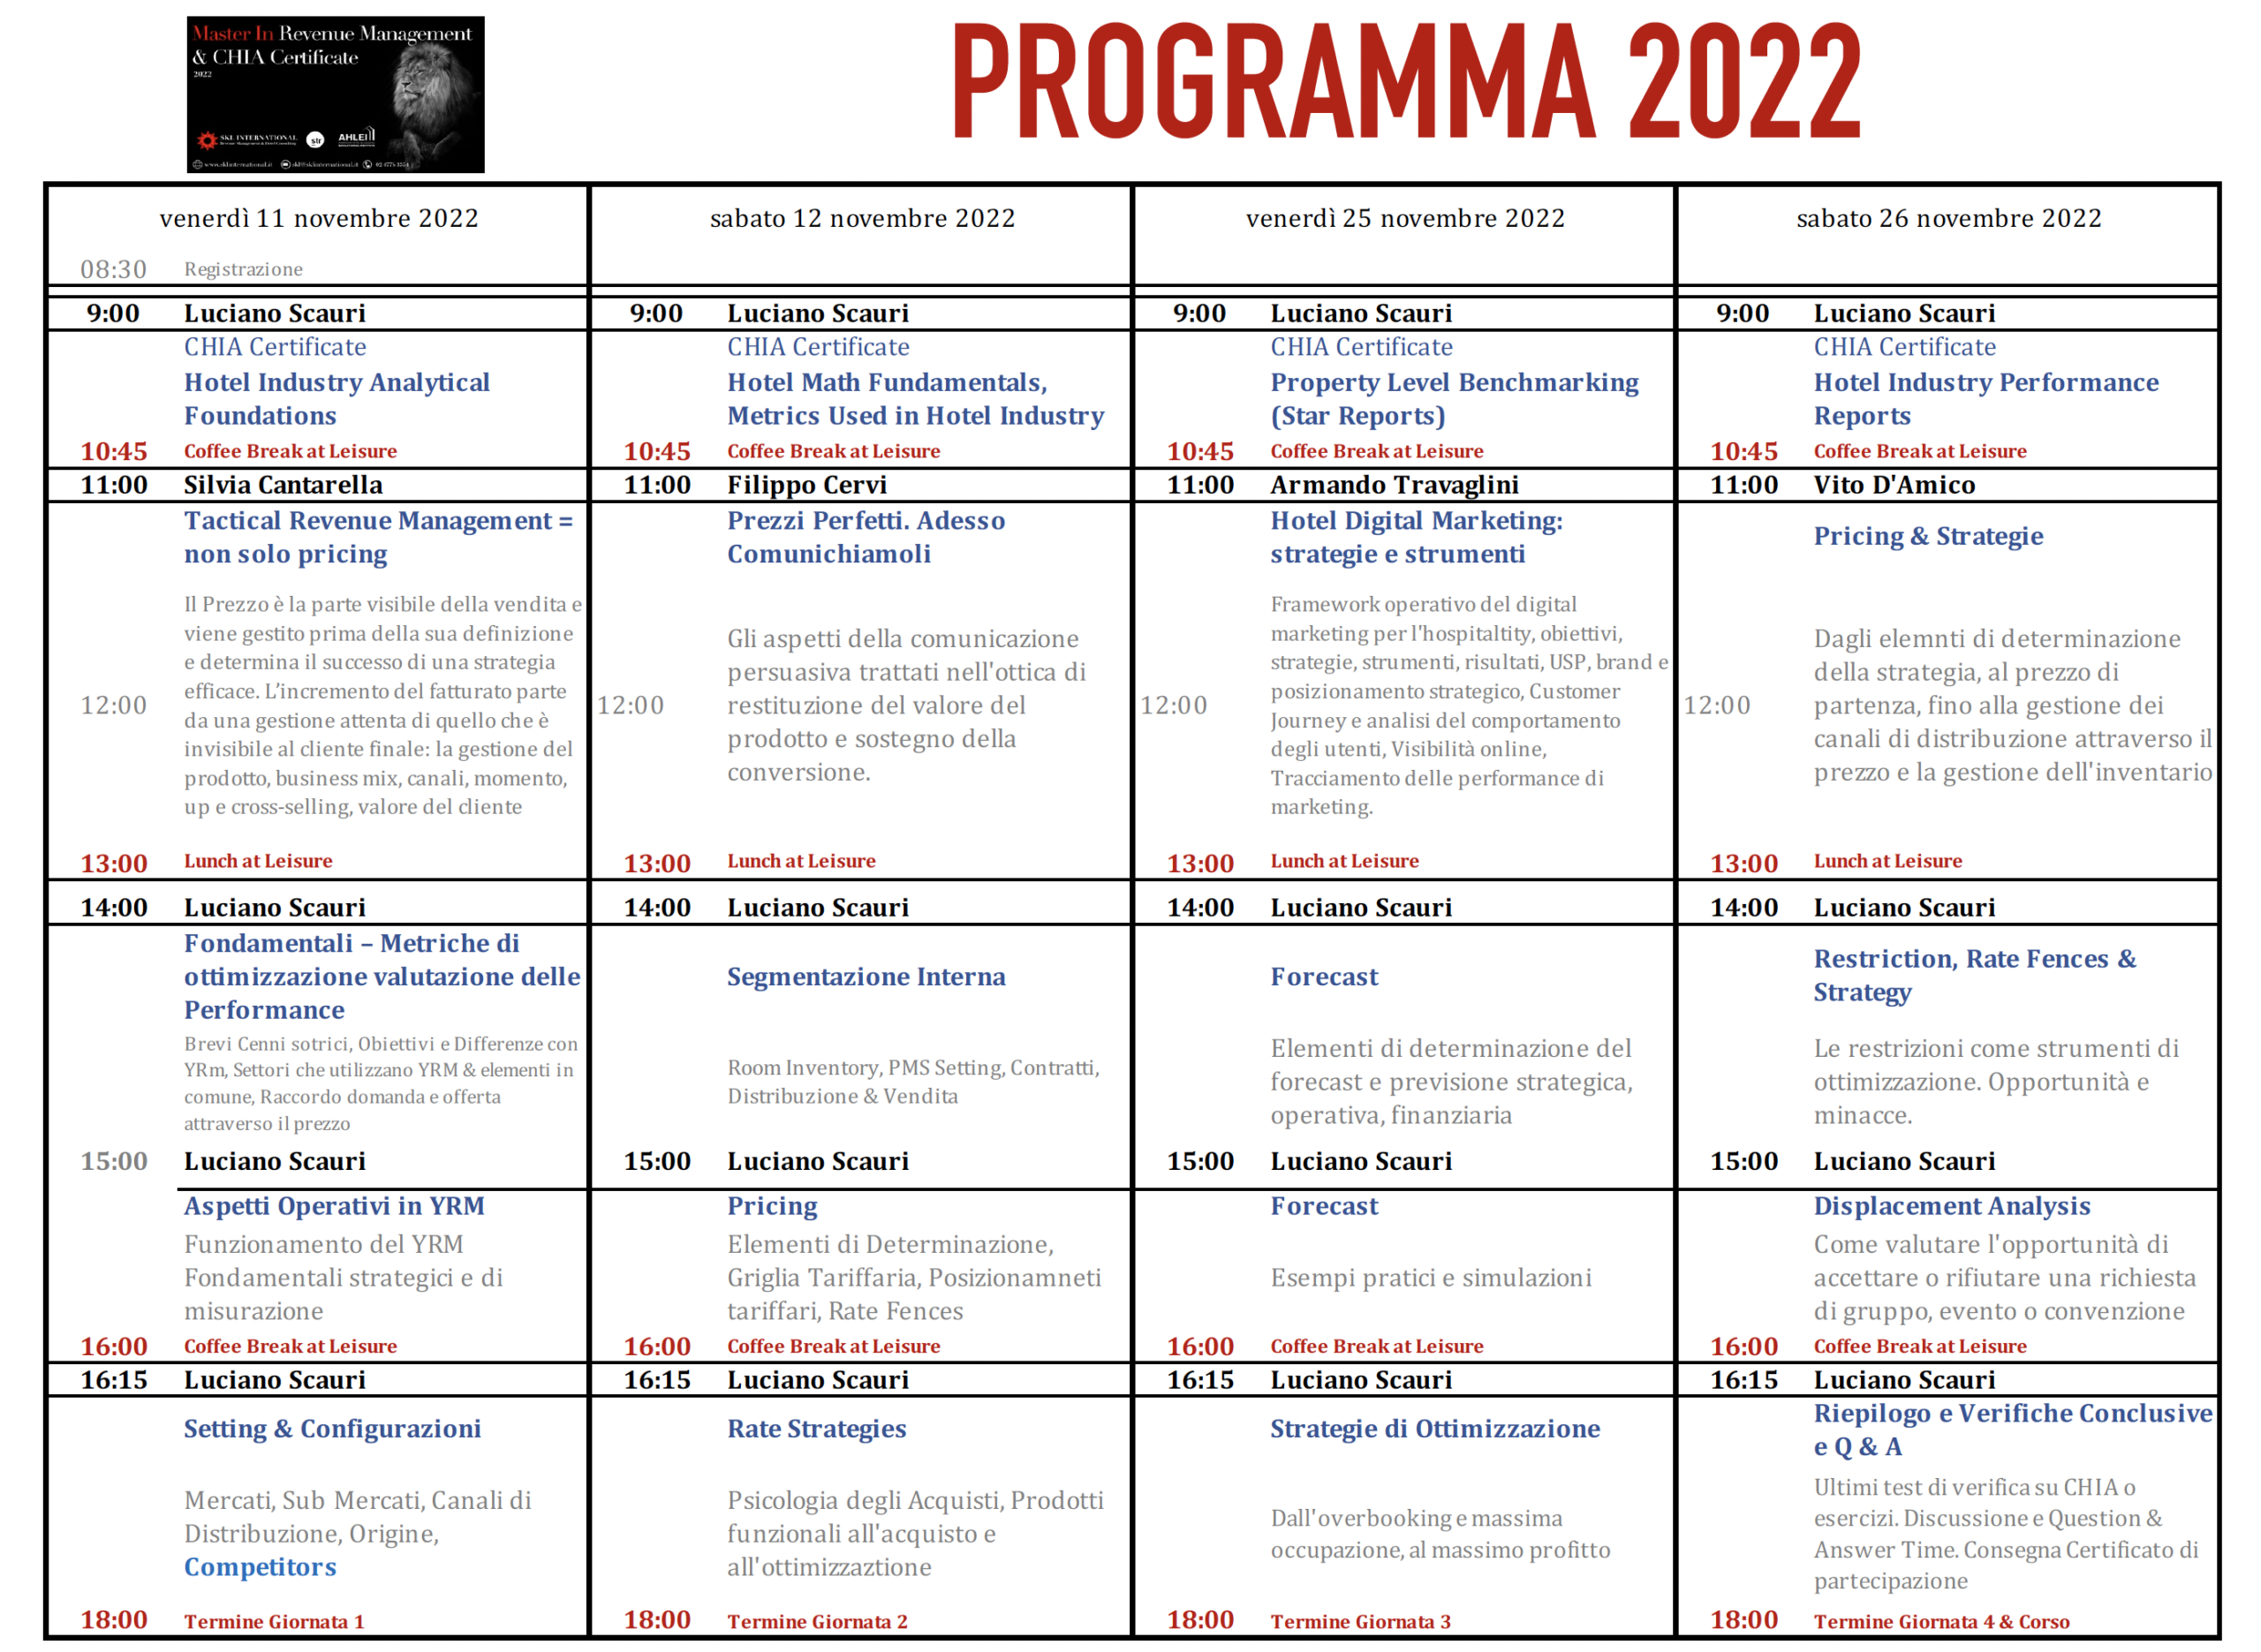 Programma Orario del Master 2022